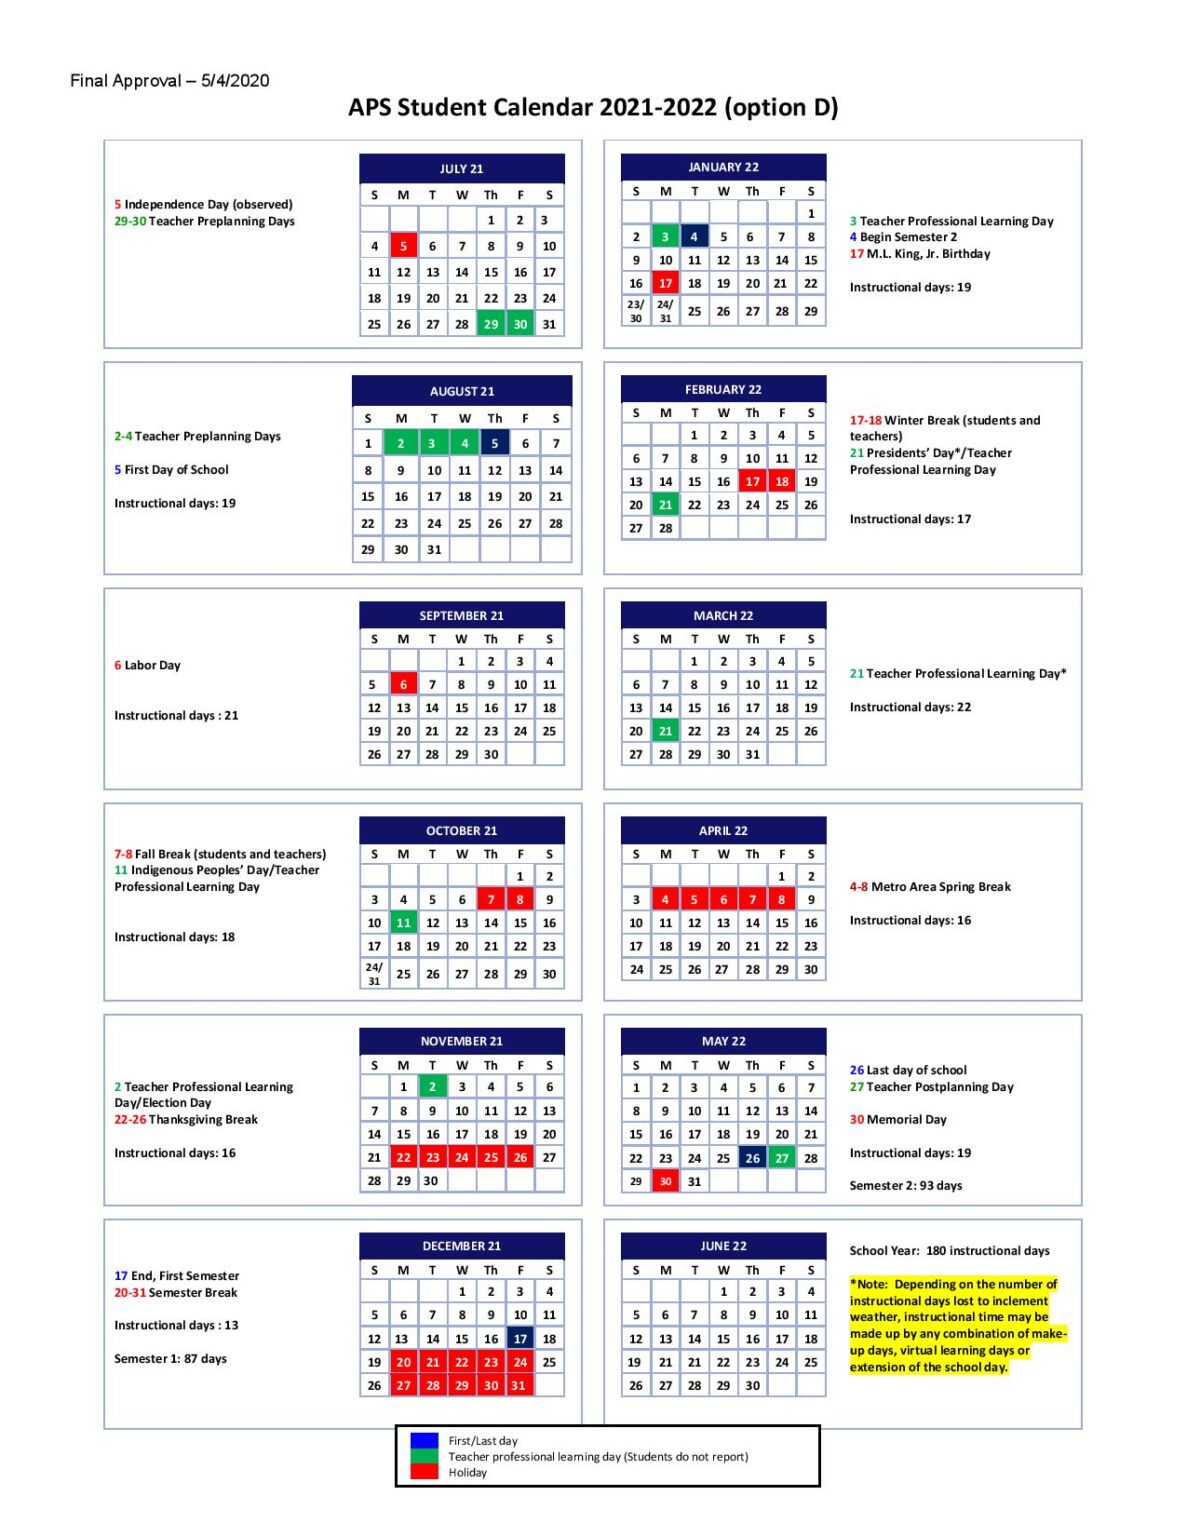 Atlanta Public Schools Calendar 2021-2022 in PDF